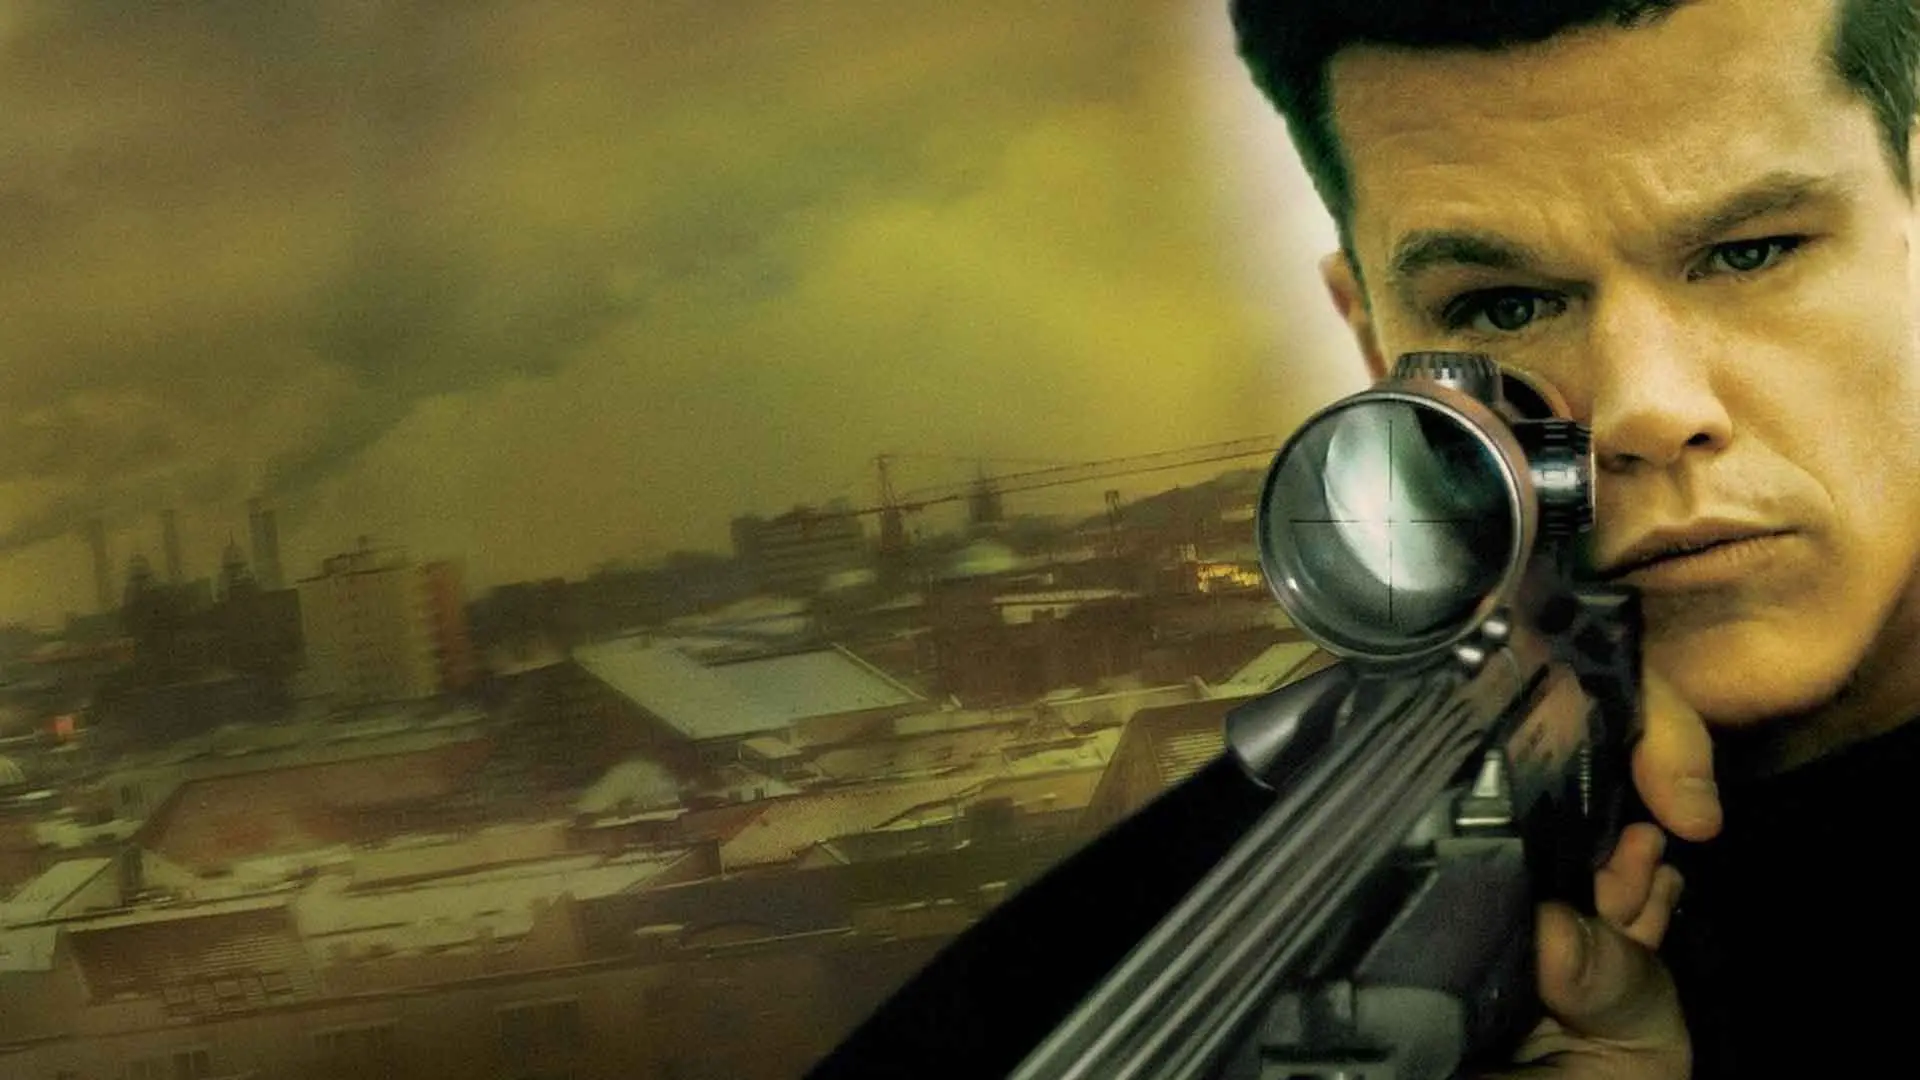 مت دیمون در نقش جیسون بورن به همراه اسلحه در فیلم The Bourne Supremacy